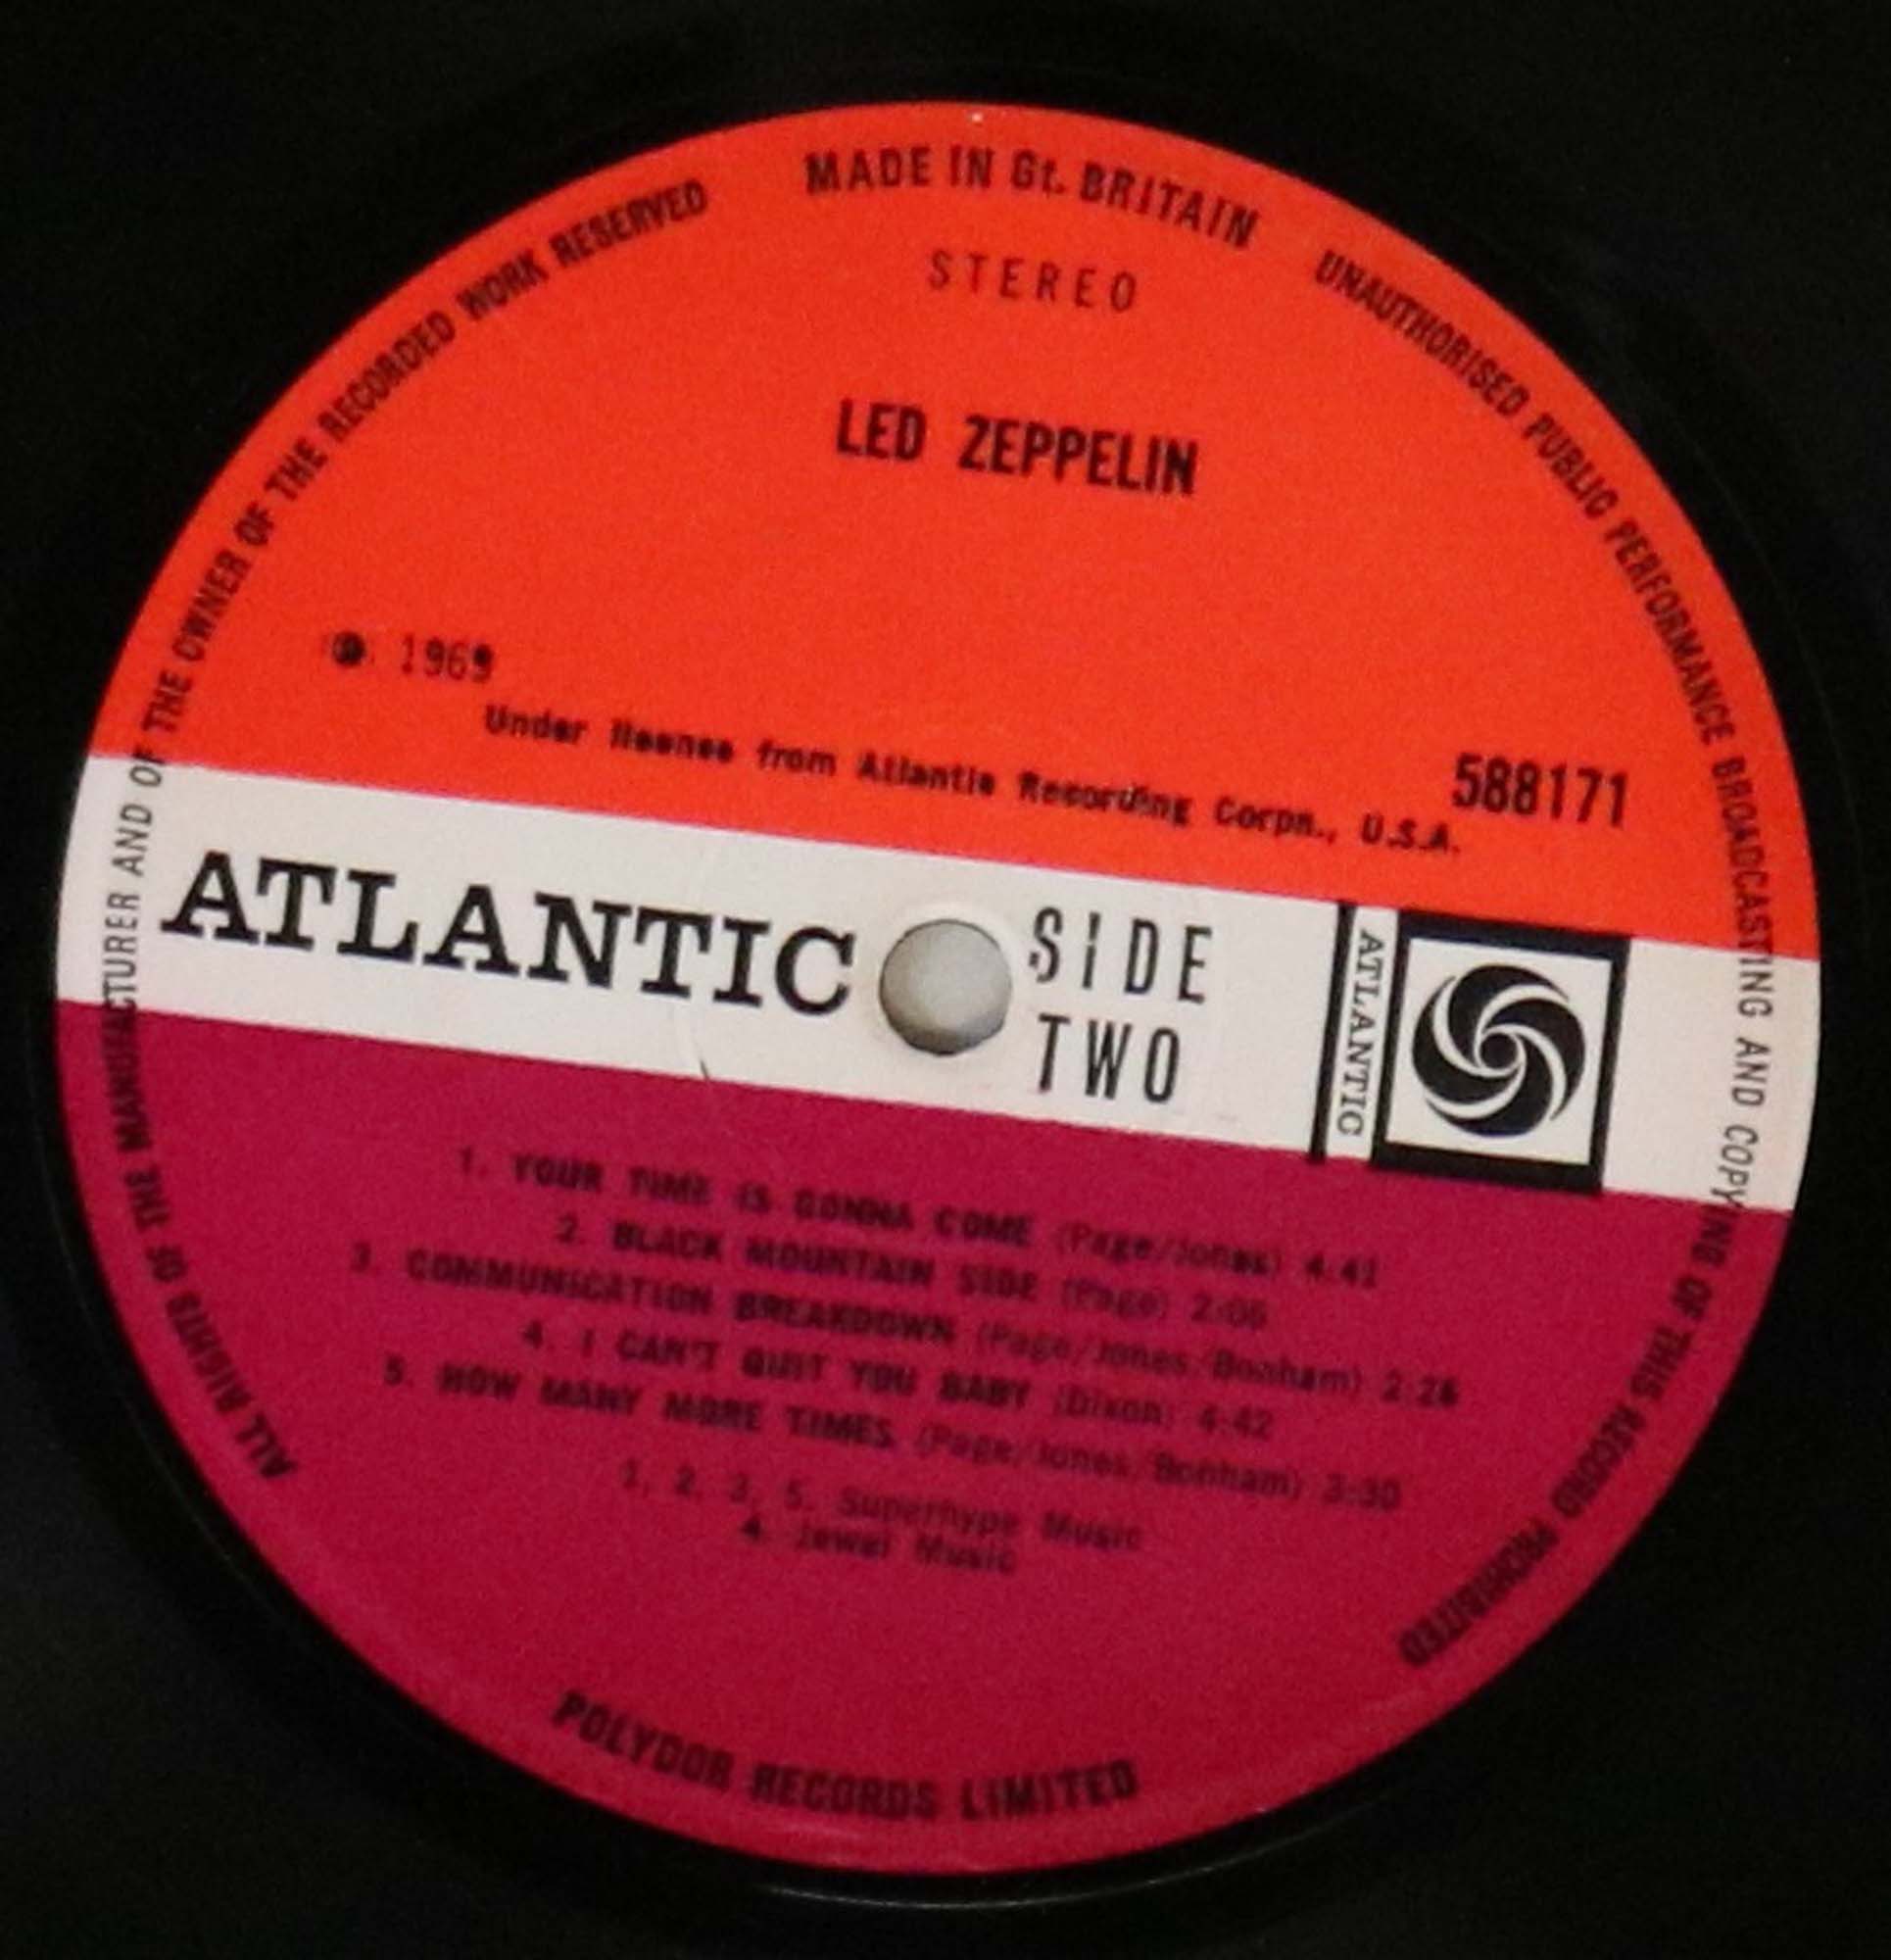 LED ZEPPELIN - I (1ST UK PRESSING LP - ATLANTIC 588171). - Image 4 of 4